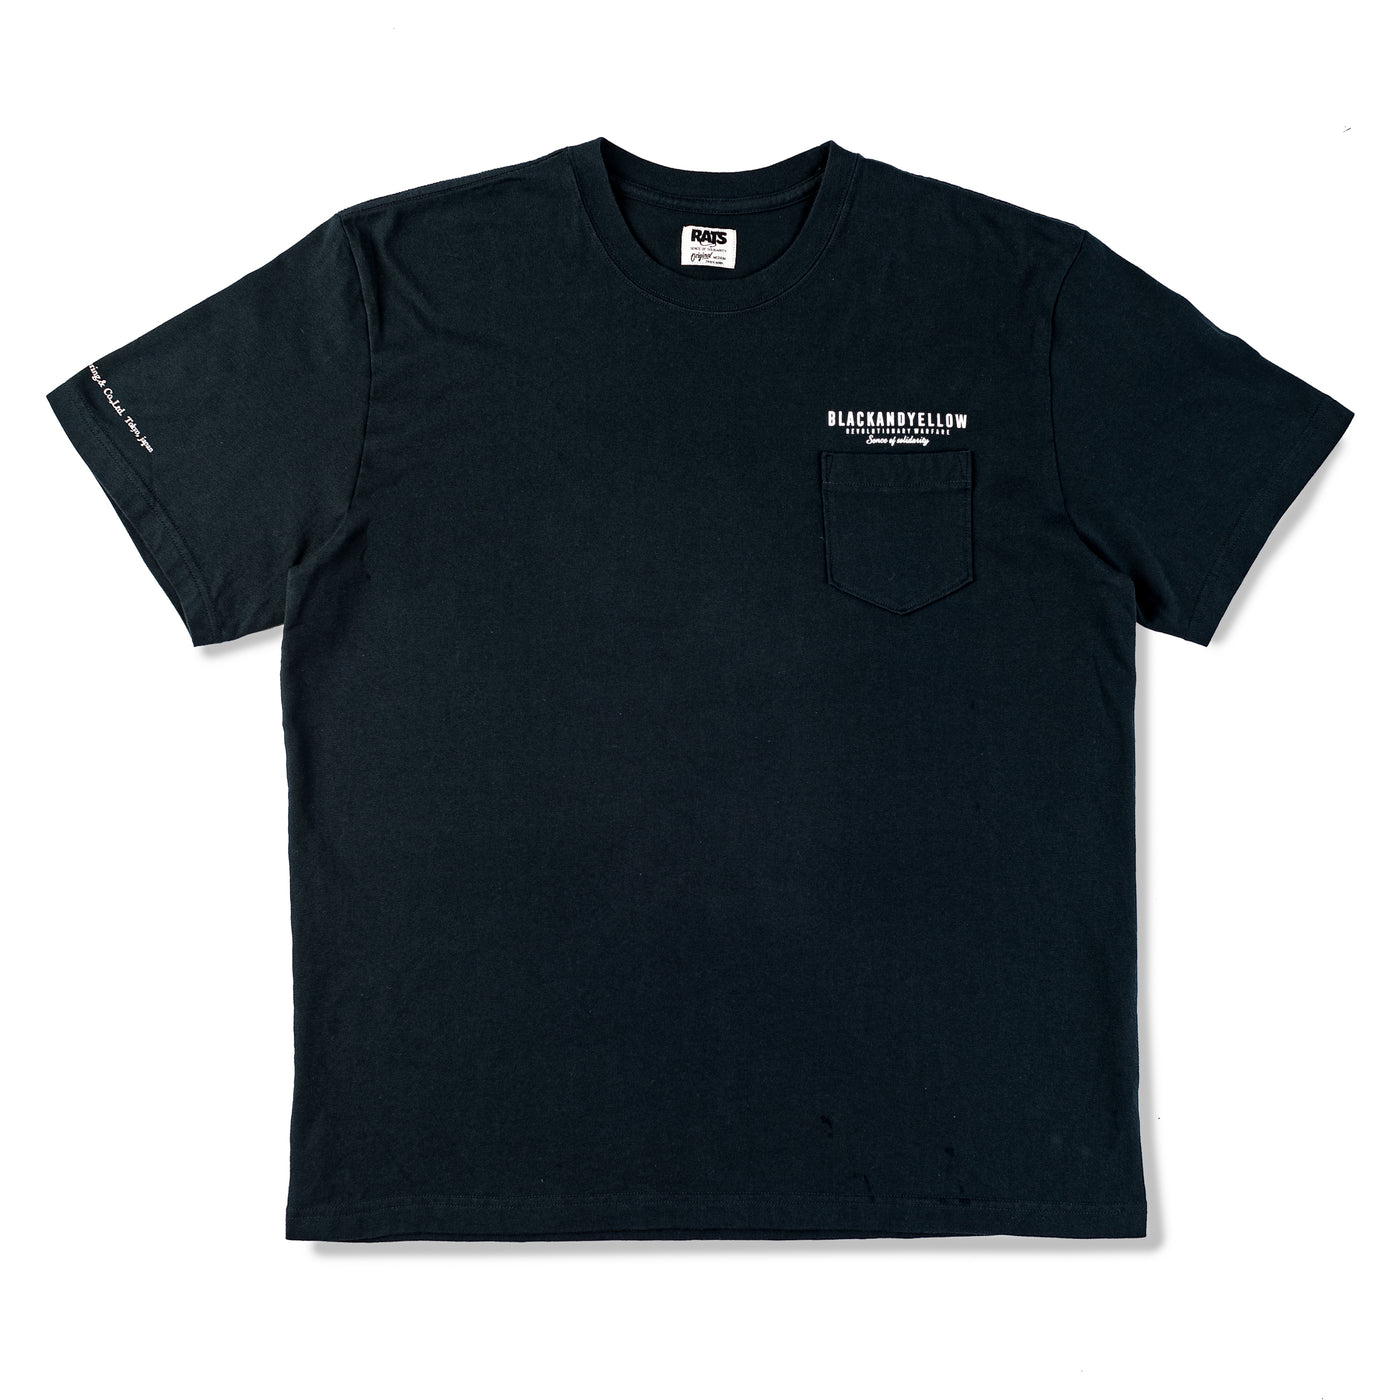 MGM S/S T-Shirt - Black